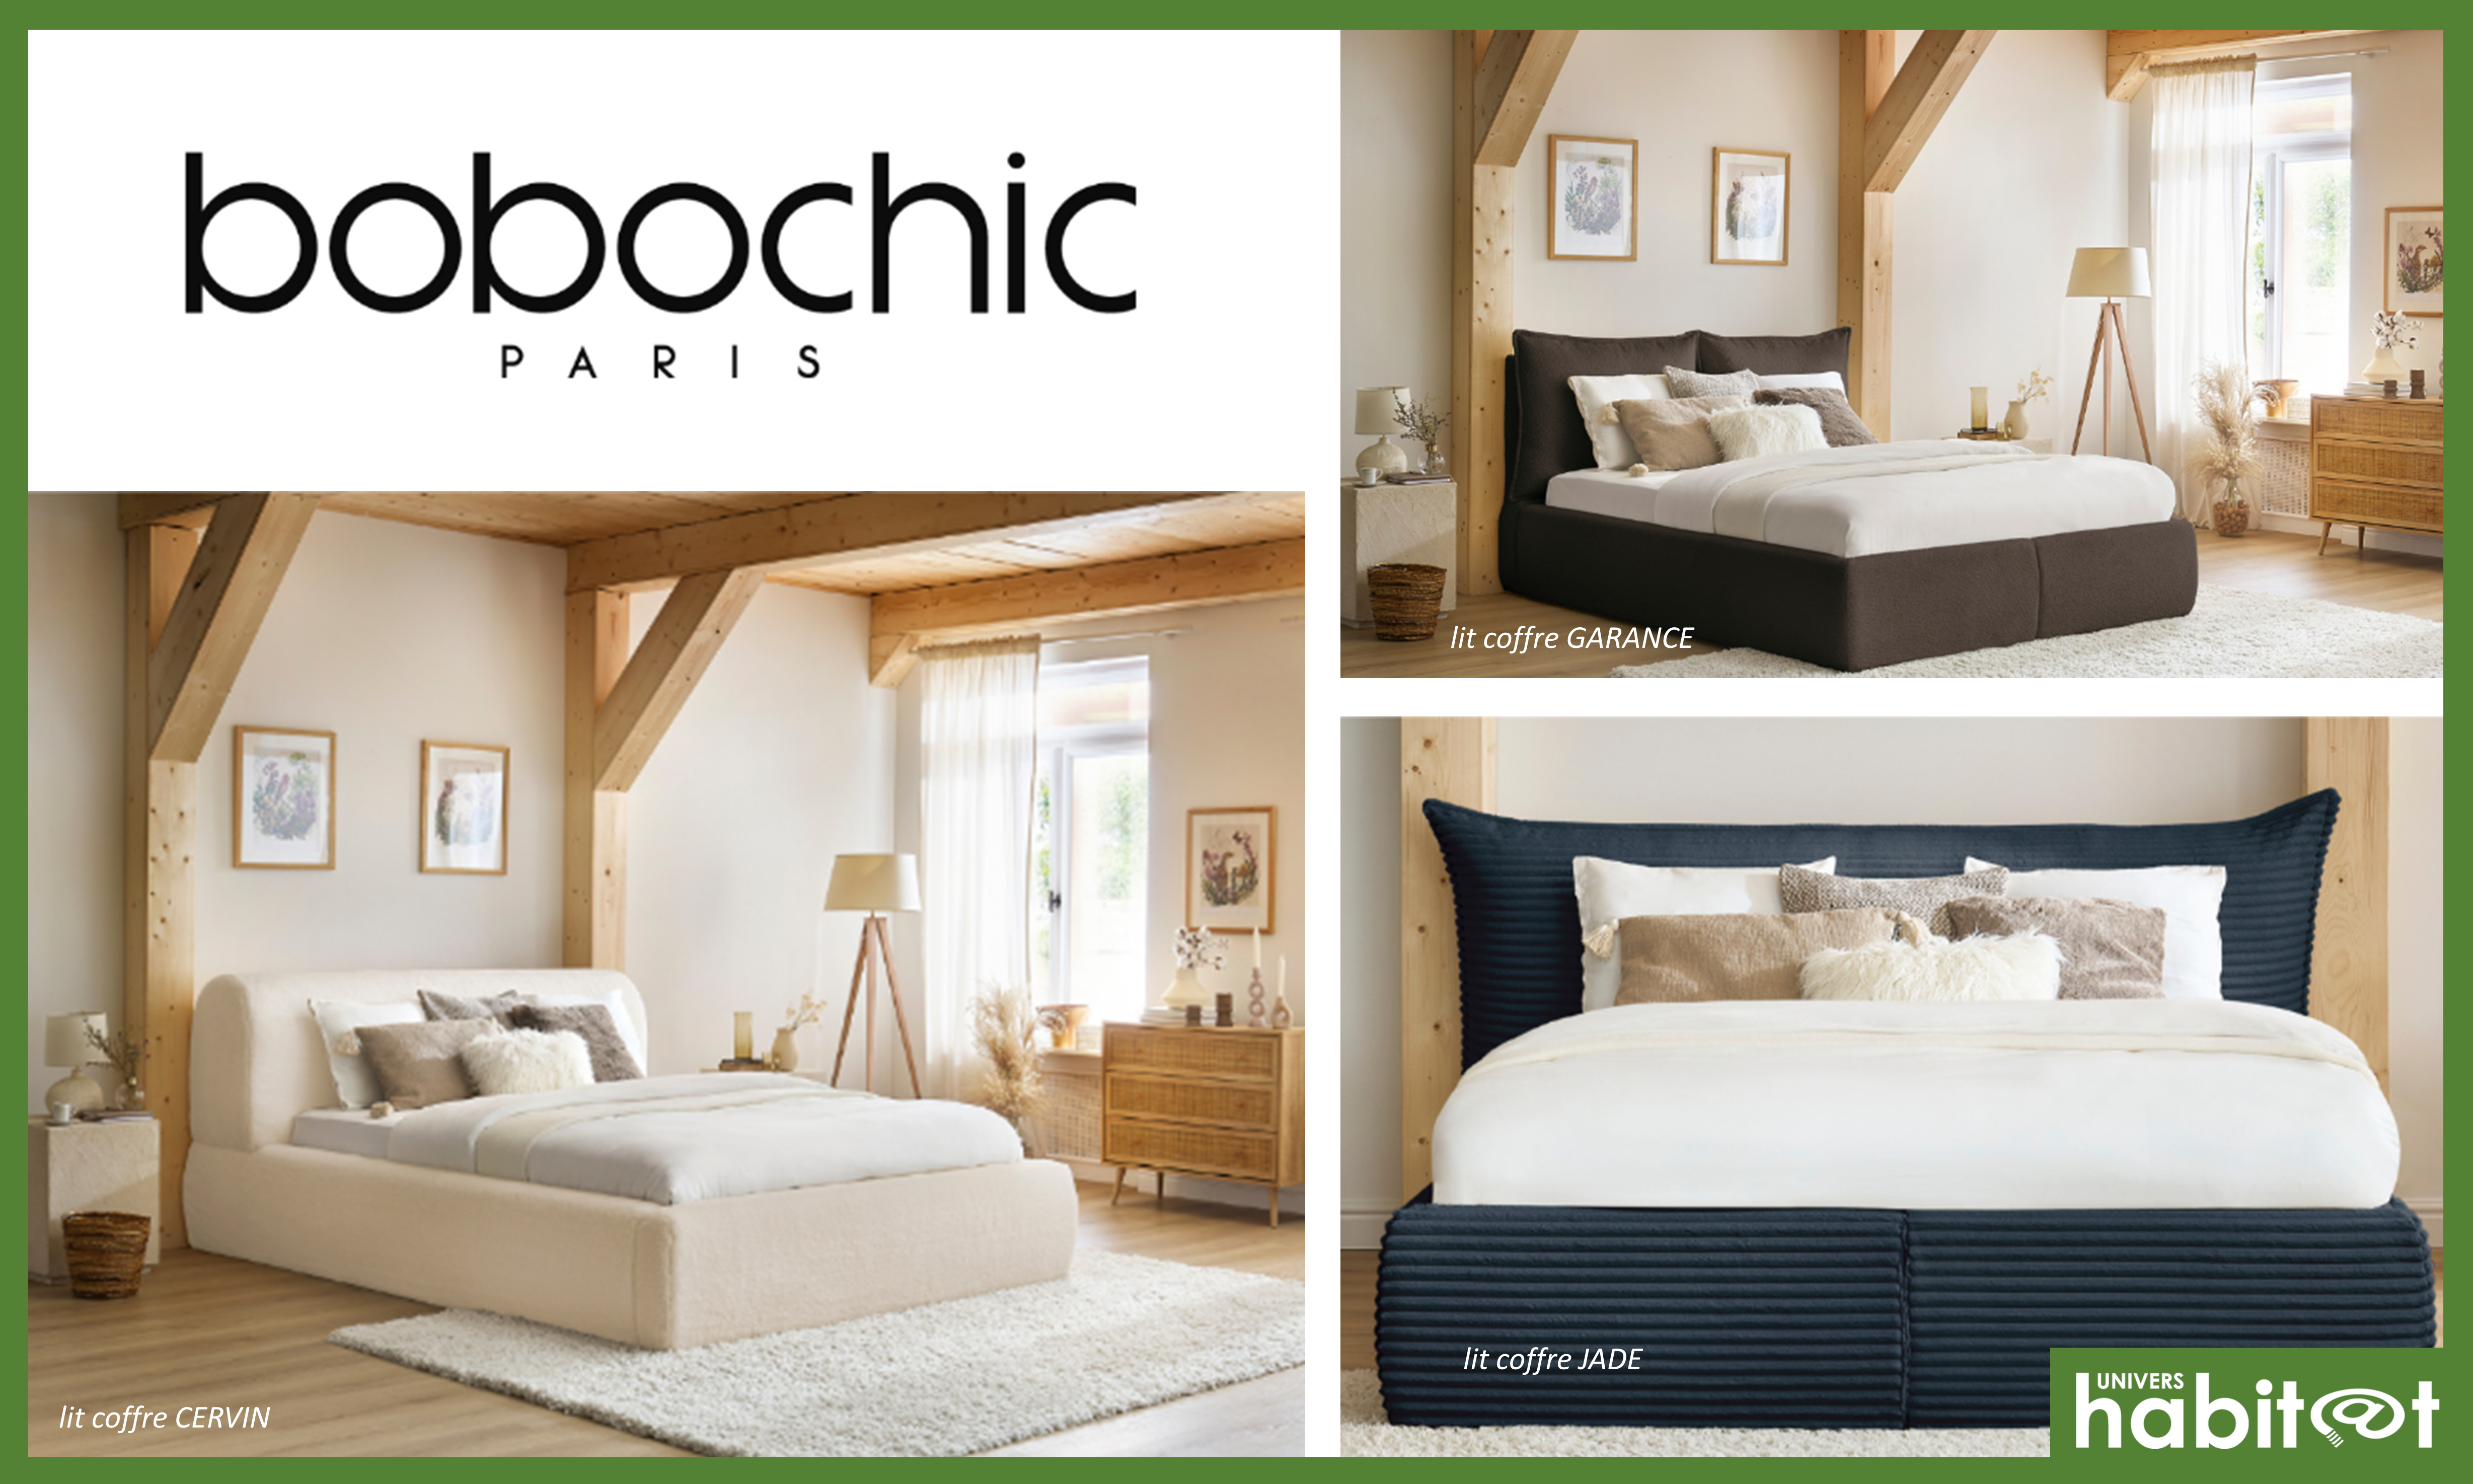 Bobochic présente ses nouvelles collections de lits pratiques, confortables et design